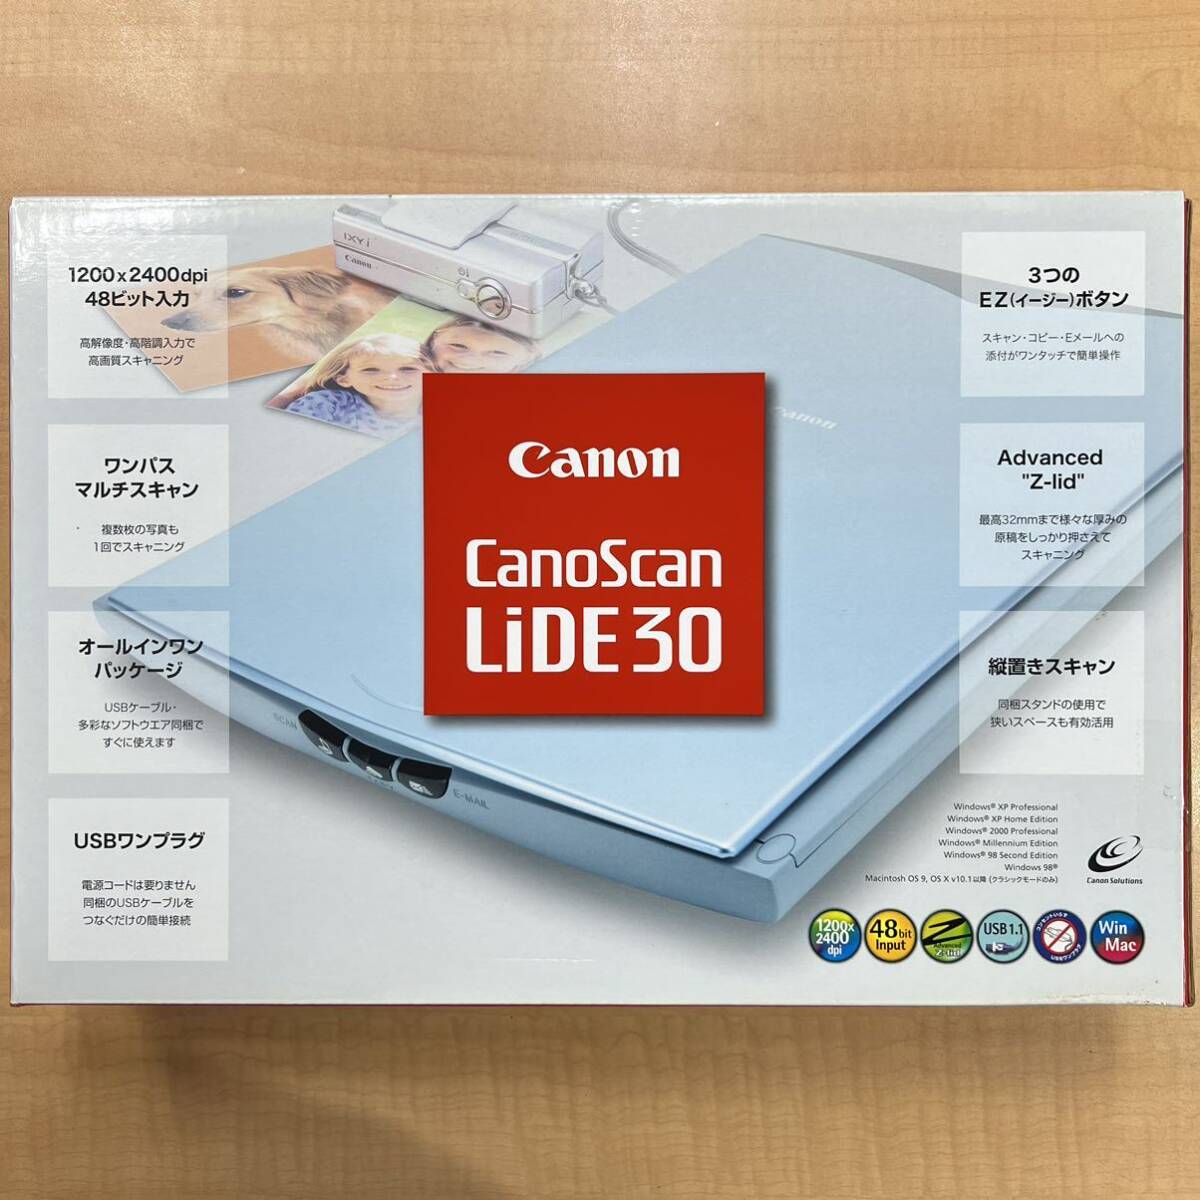 未使用 Canon CanoScan LiDE 30 フラットベッドスキャナー キャノン キャノスキャン ライド 30 経年保管品 新品_画像1